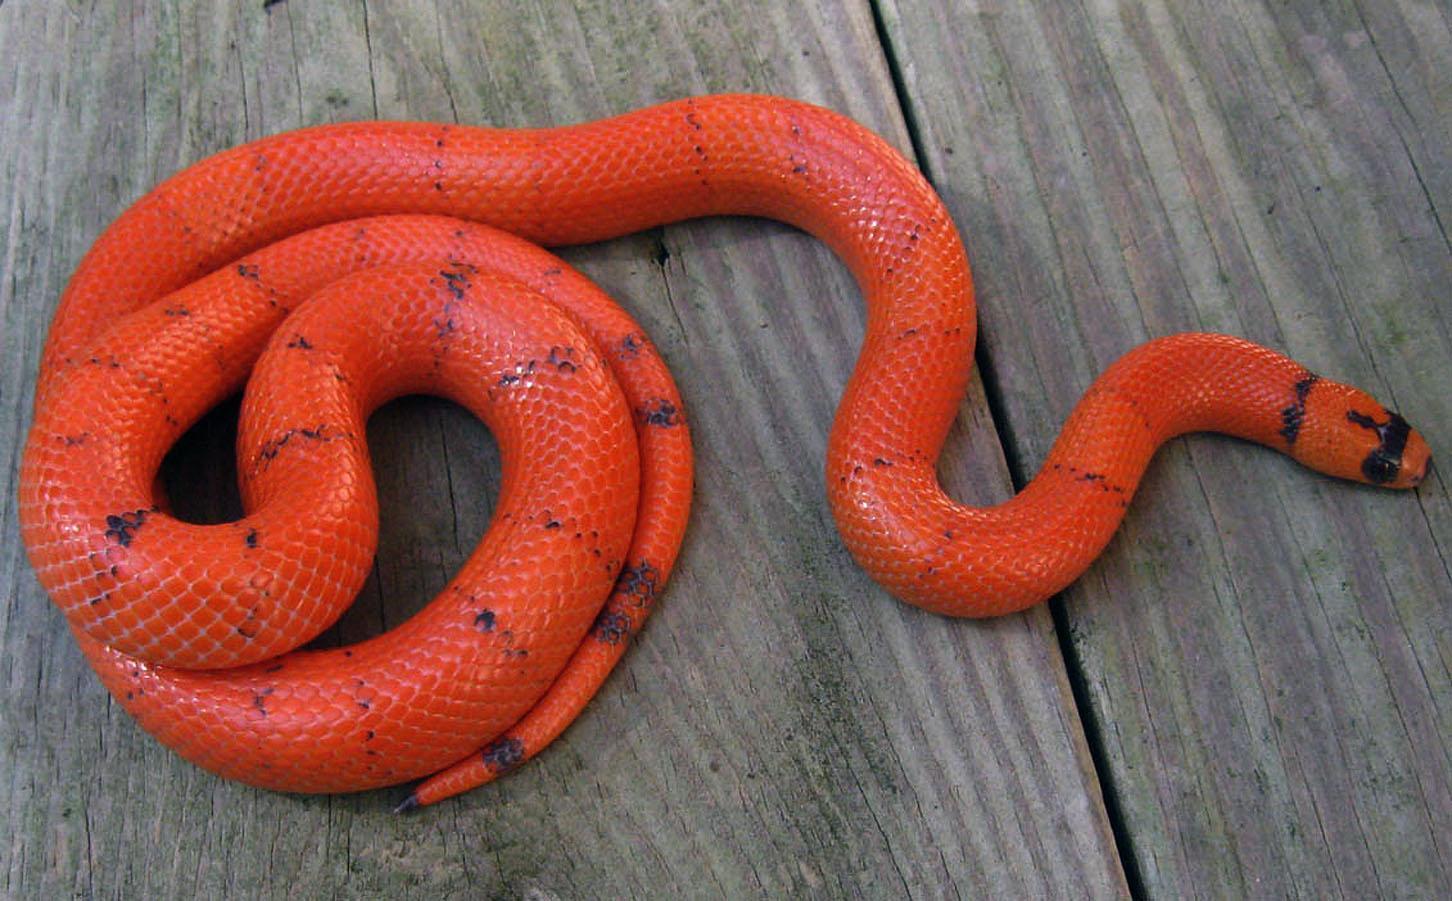 Honduran Milk Snake